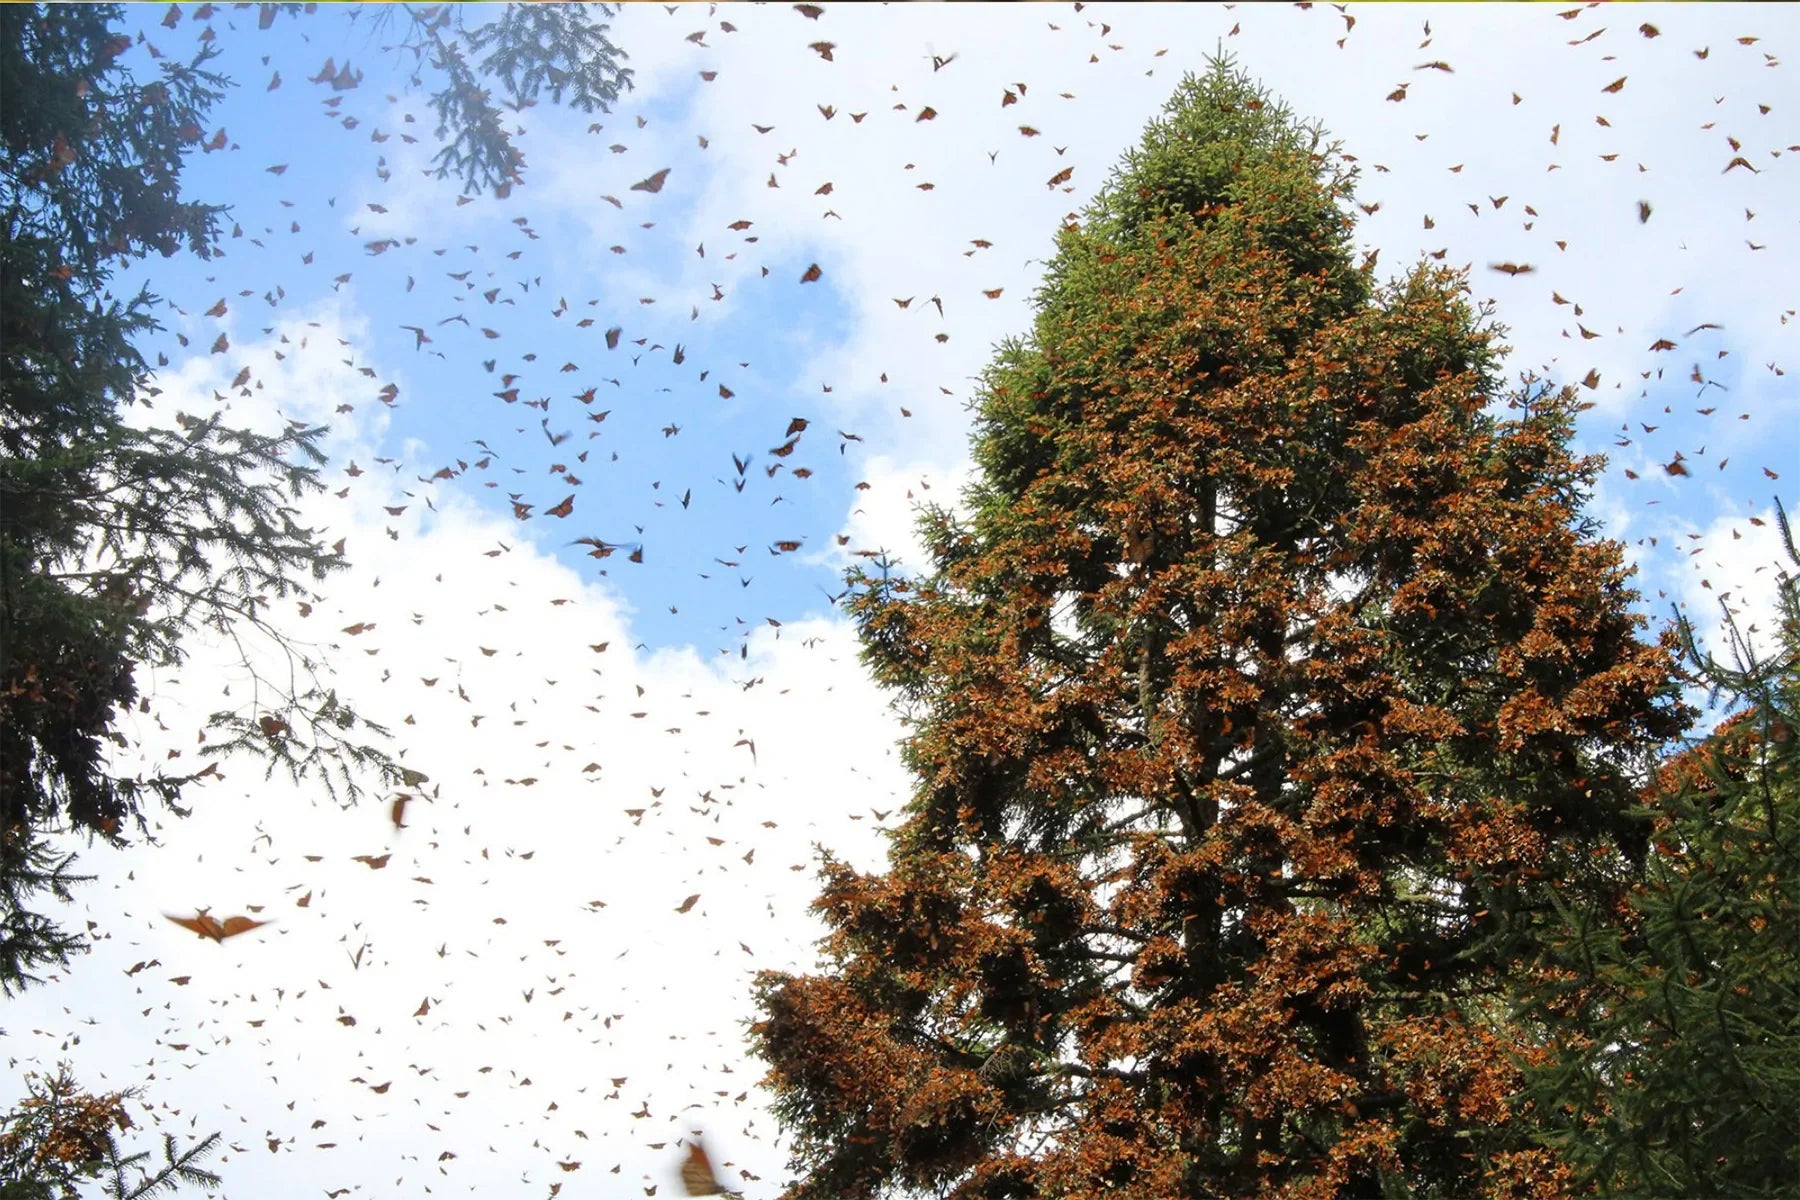 monarch butterflies landing on tree migration